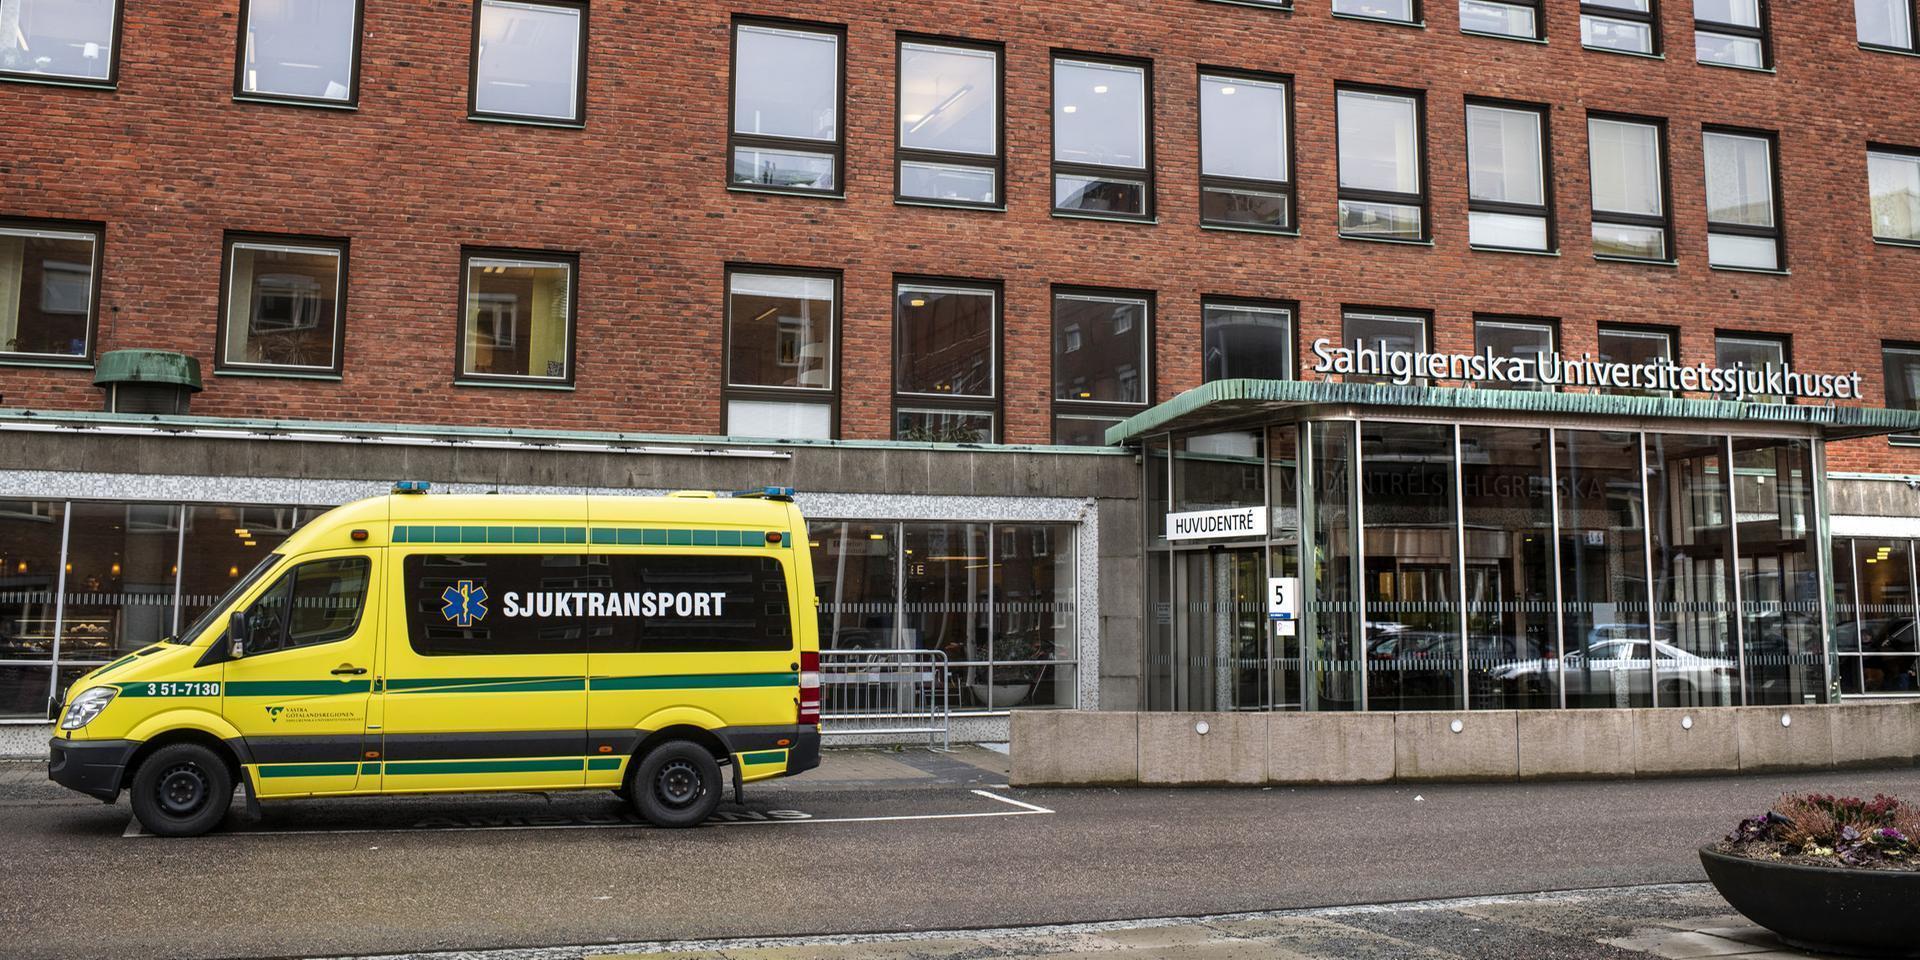 400 tjänster ska bort på Sahlgrenska universitetssjukhuset nästa år, det beslutade sjukhusets styrelse under tisdagen. 